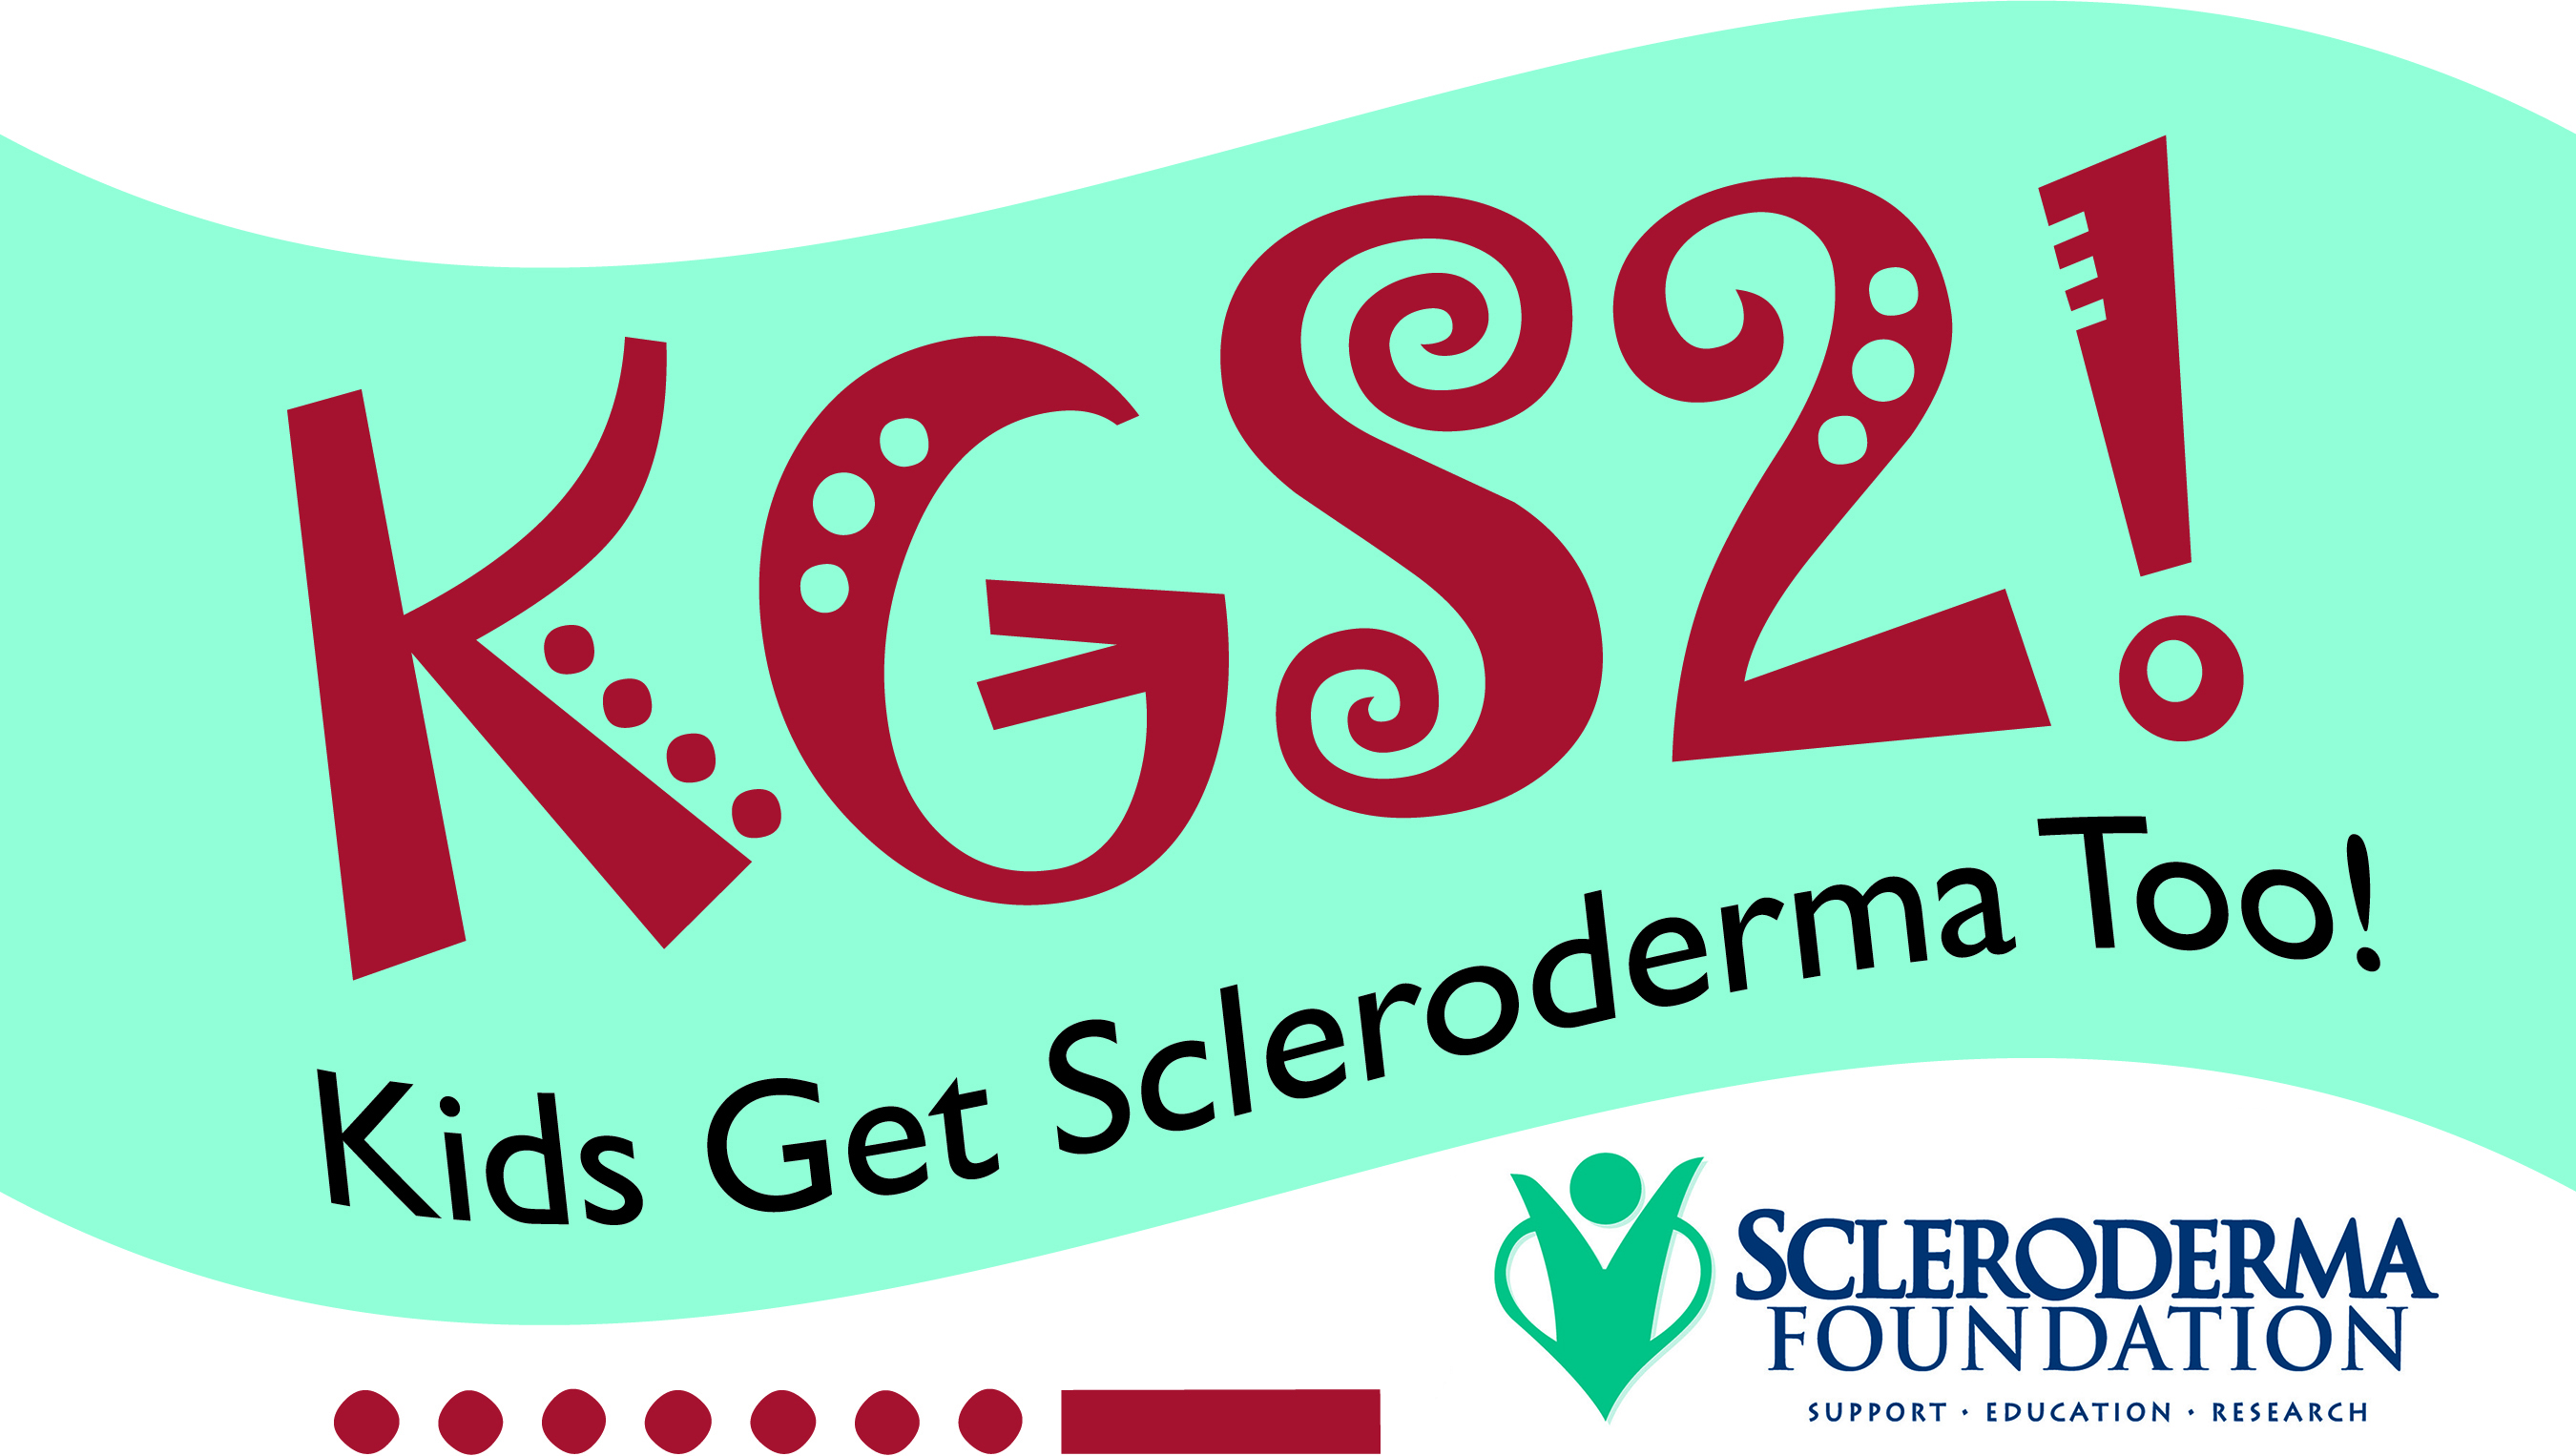 KGS2 Kids Get Scleroderma Too logo SF